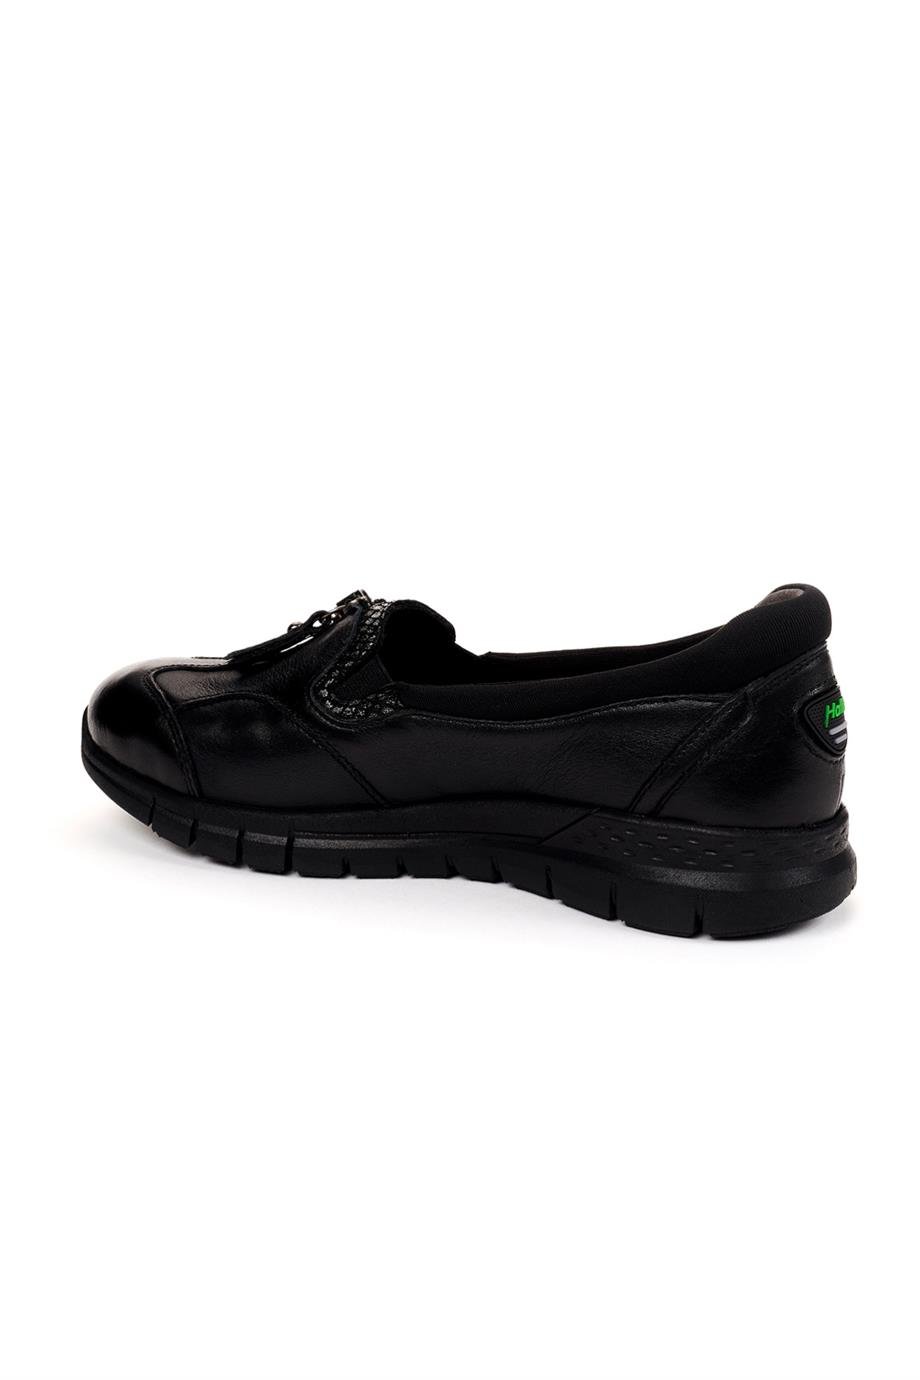 Forelli LILYUM-G Comfort Kadın Ayakkabı Siyah | Çakıcı Ayakkabı